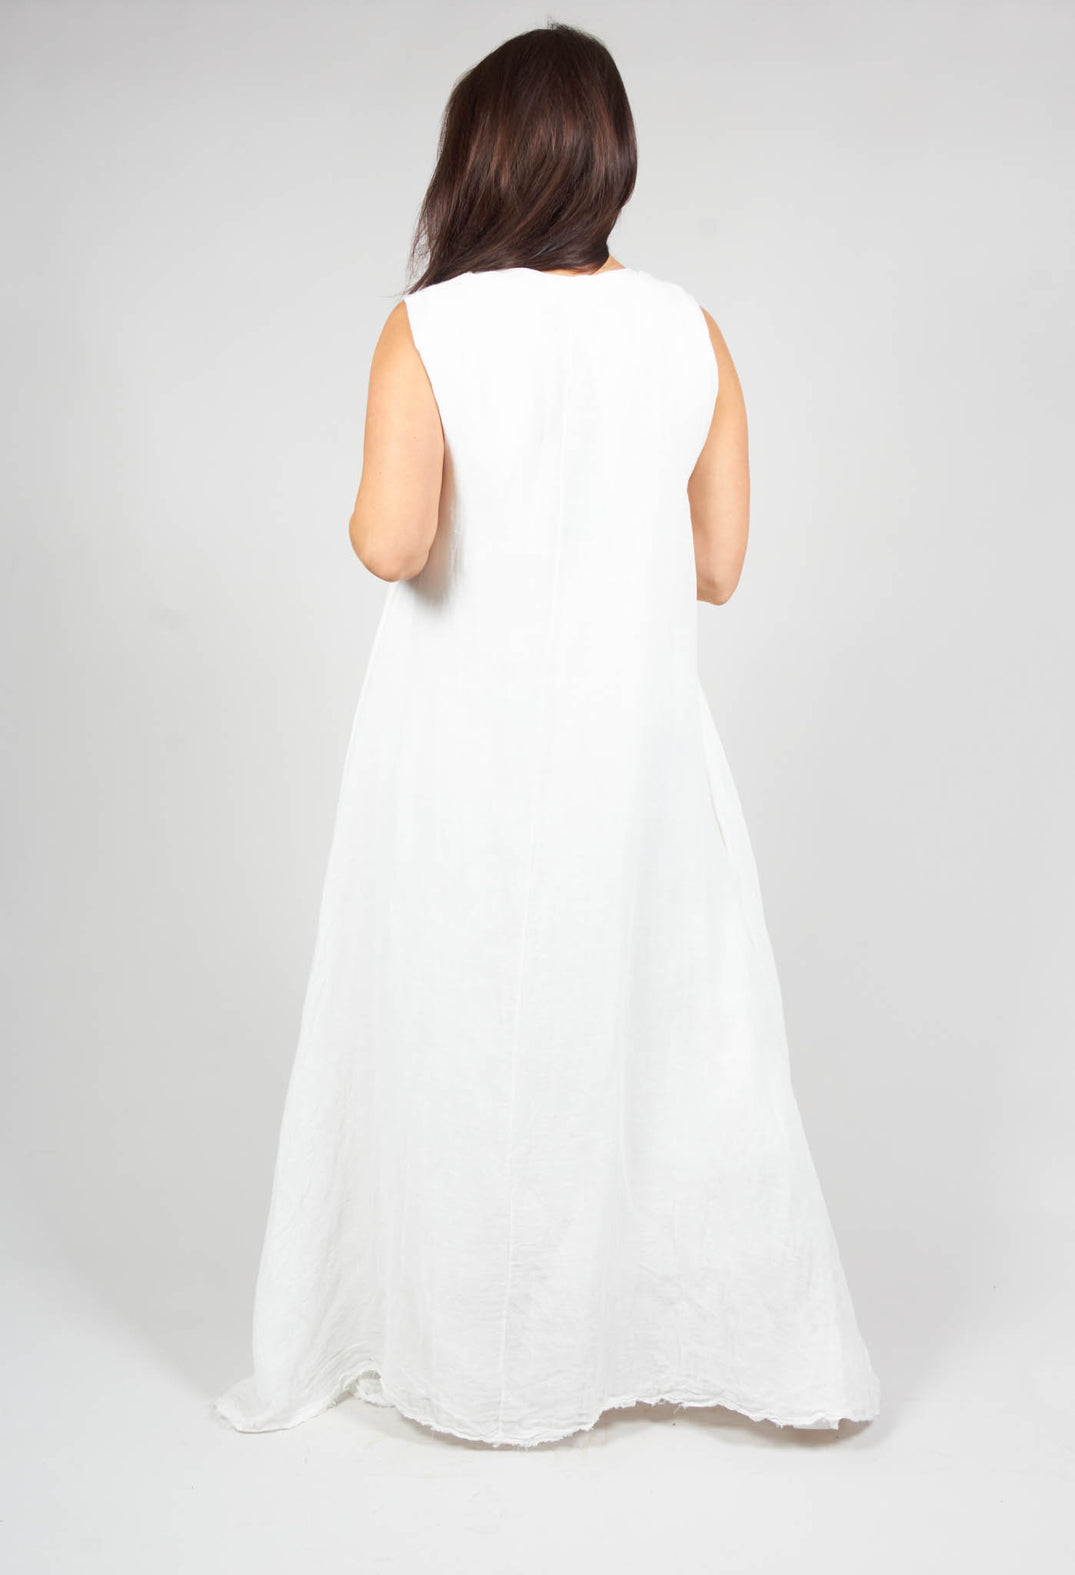 Abigail Sleeveless Dress in White